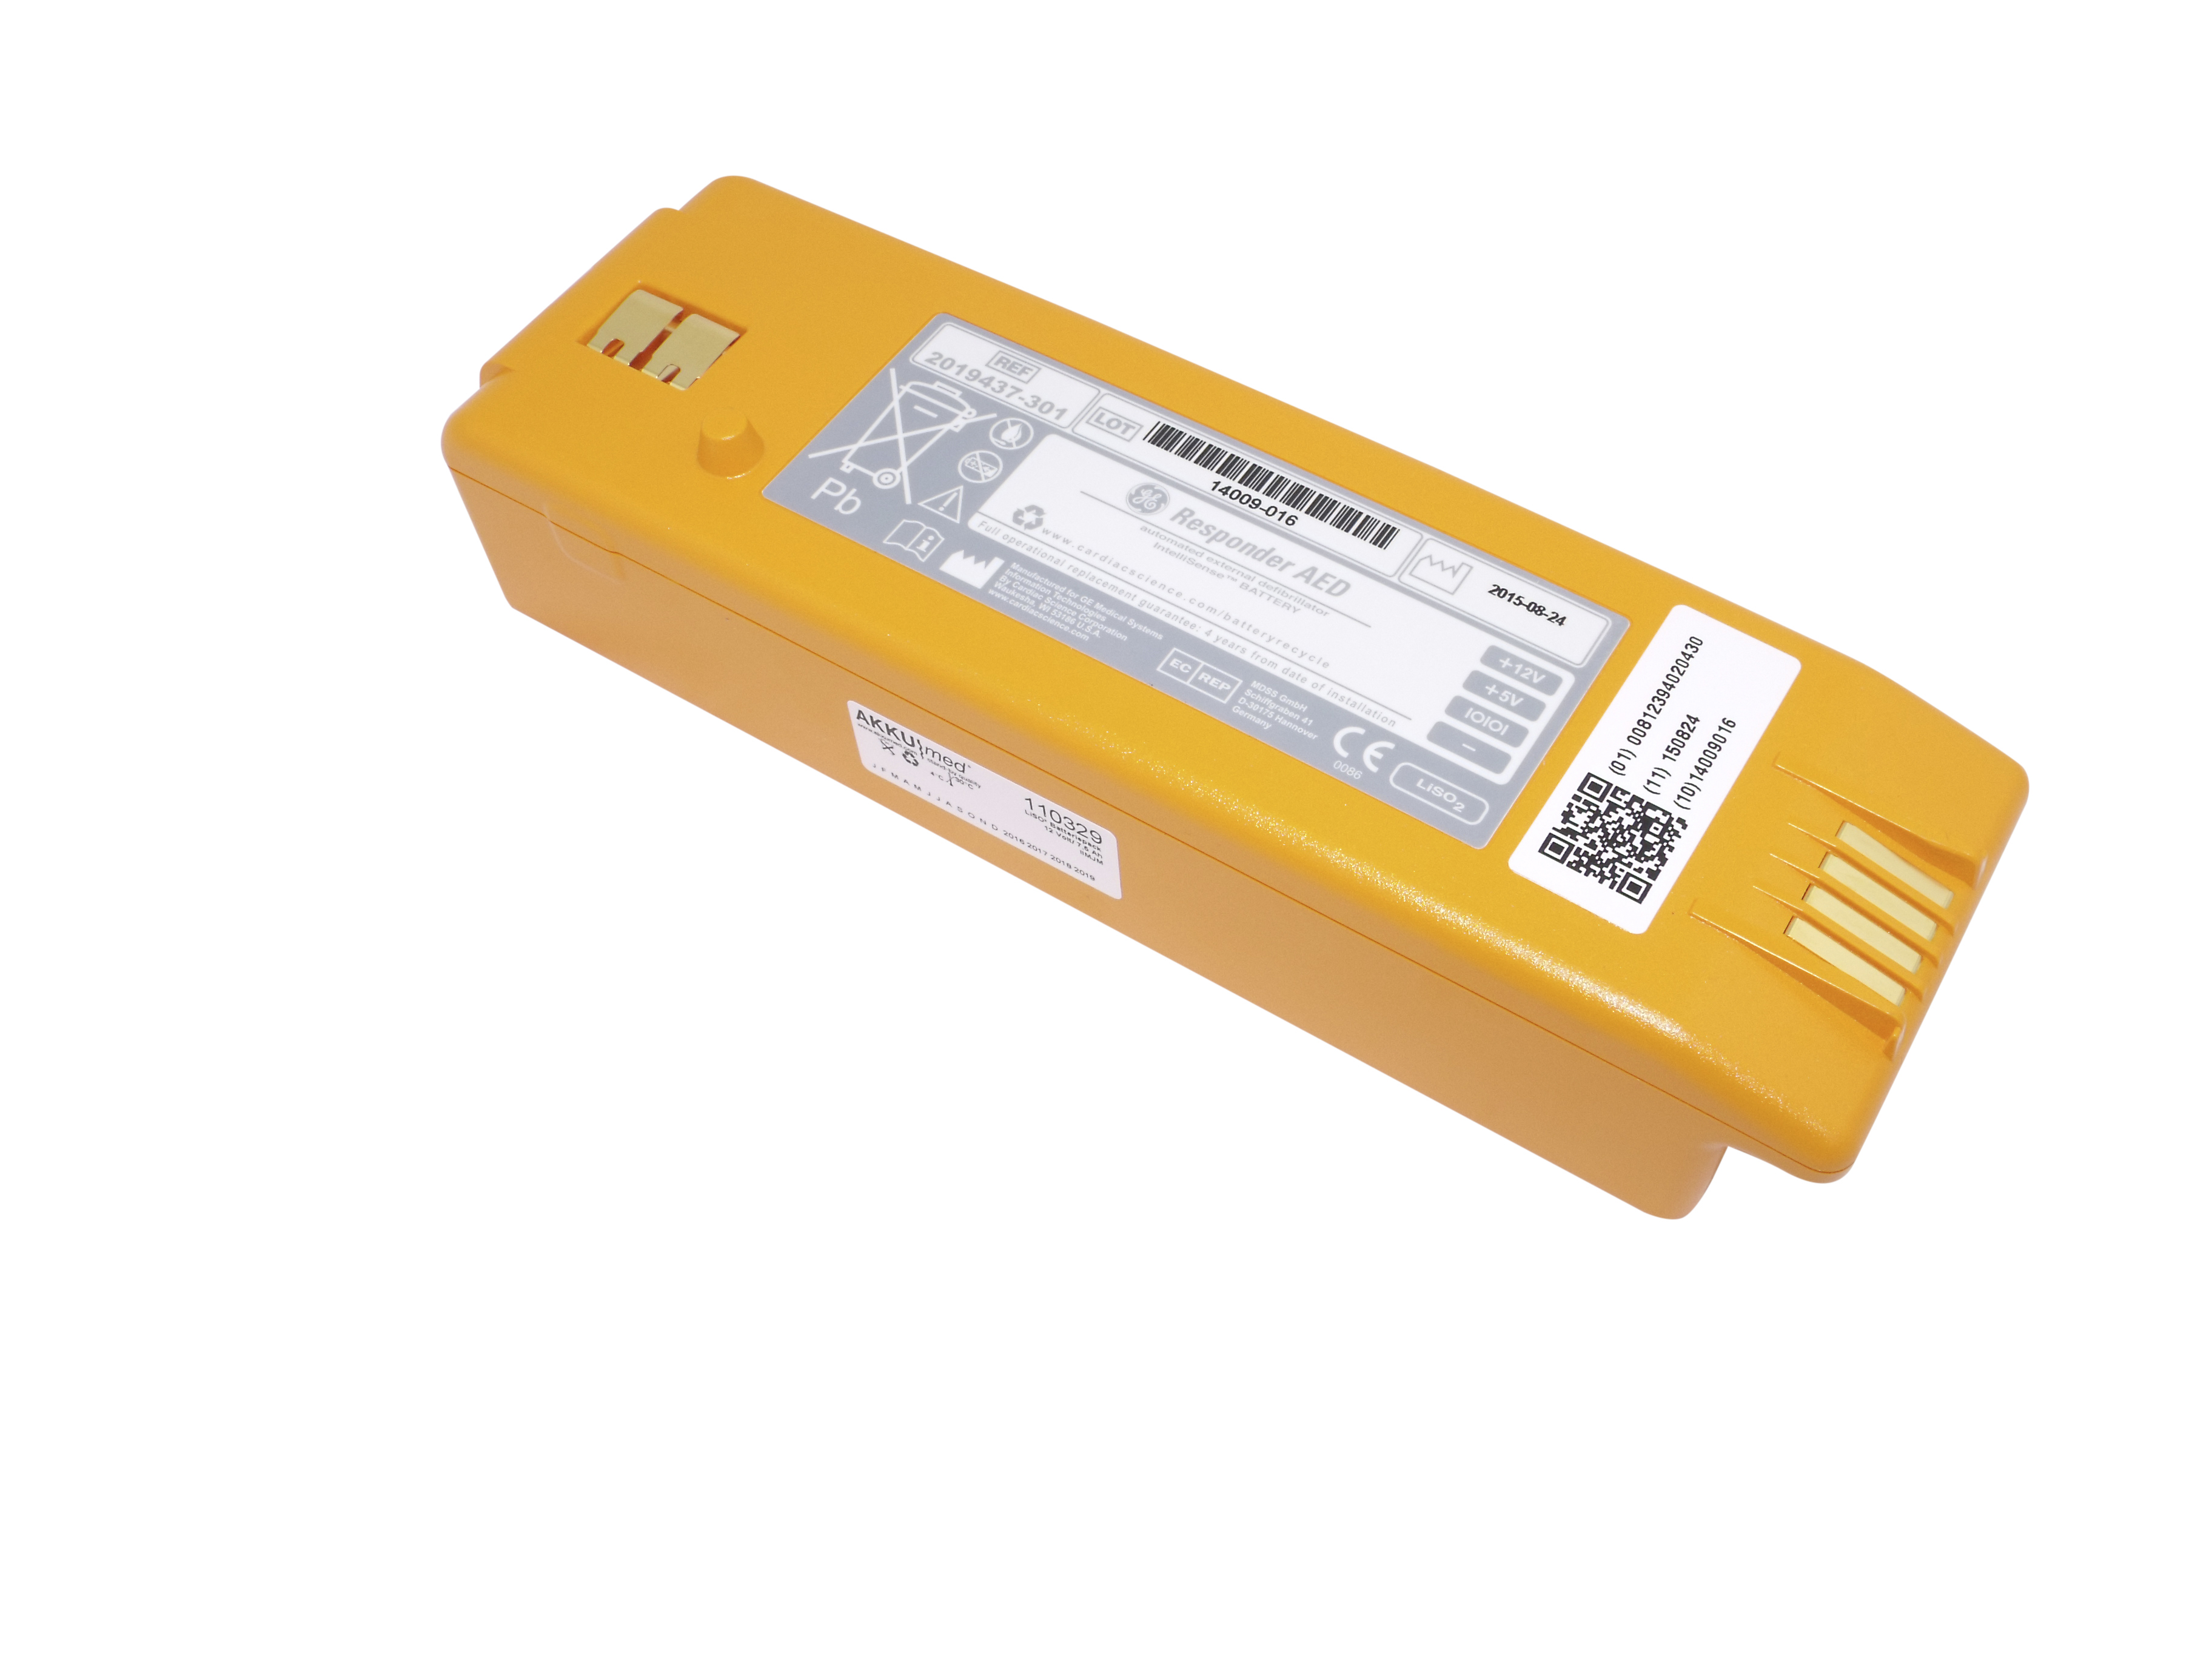 Original Lithiumbatterie GE Responder AED Defibrillator - 2019437-001